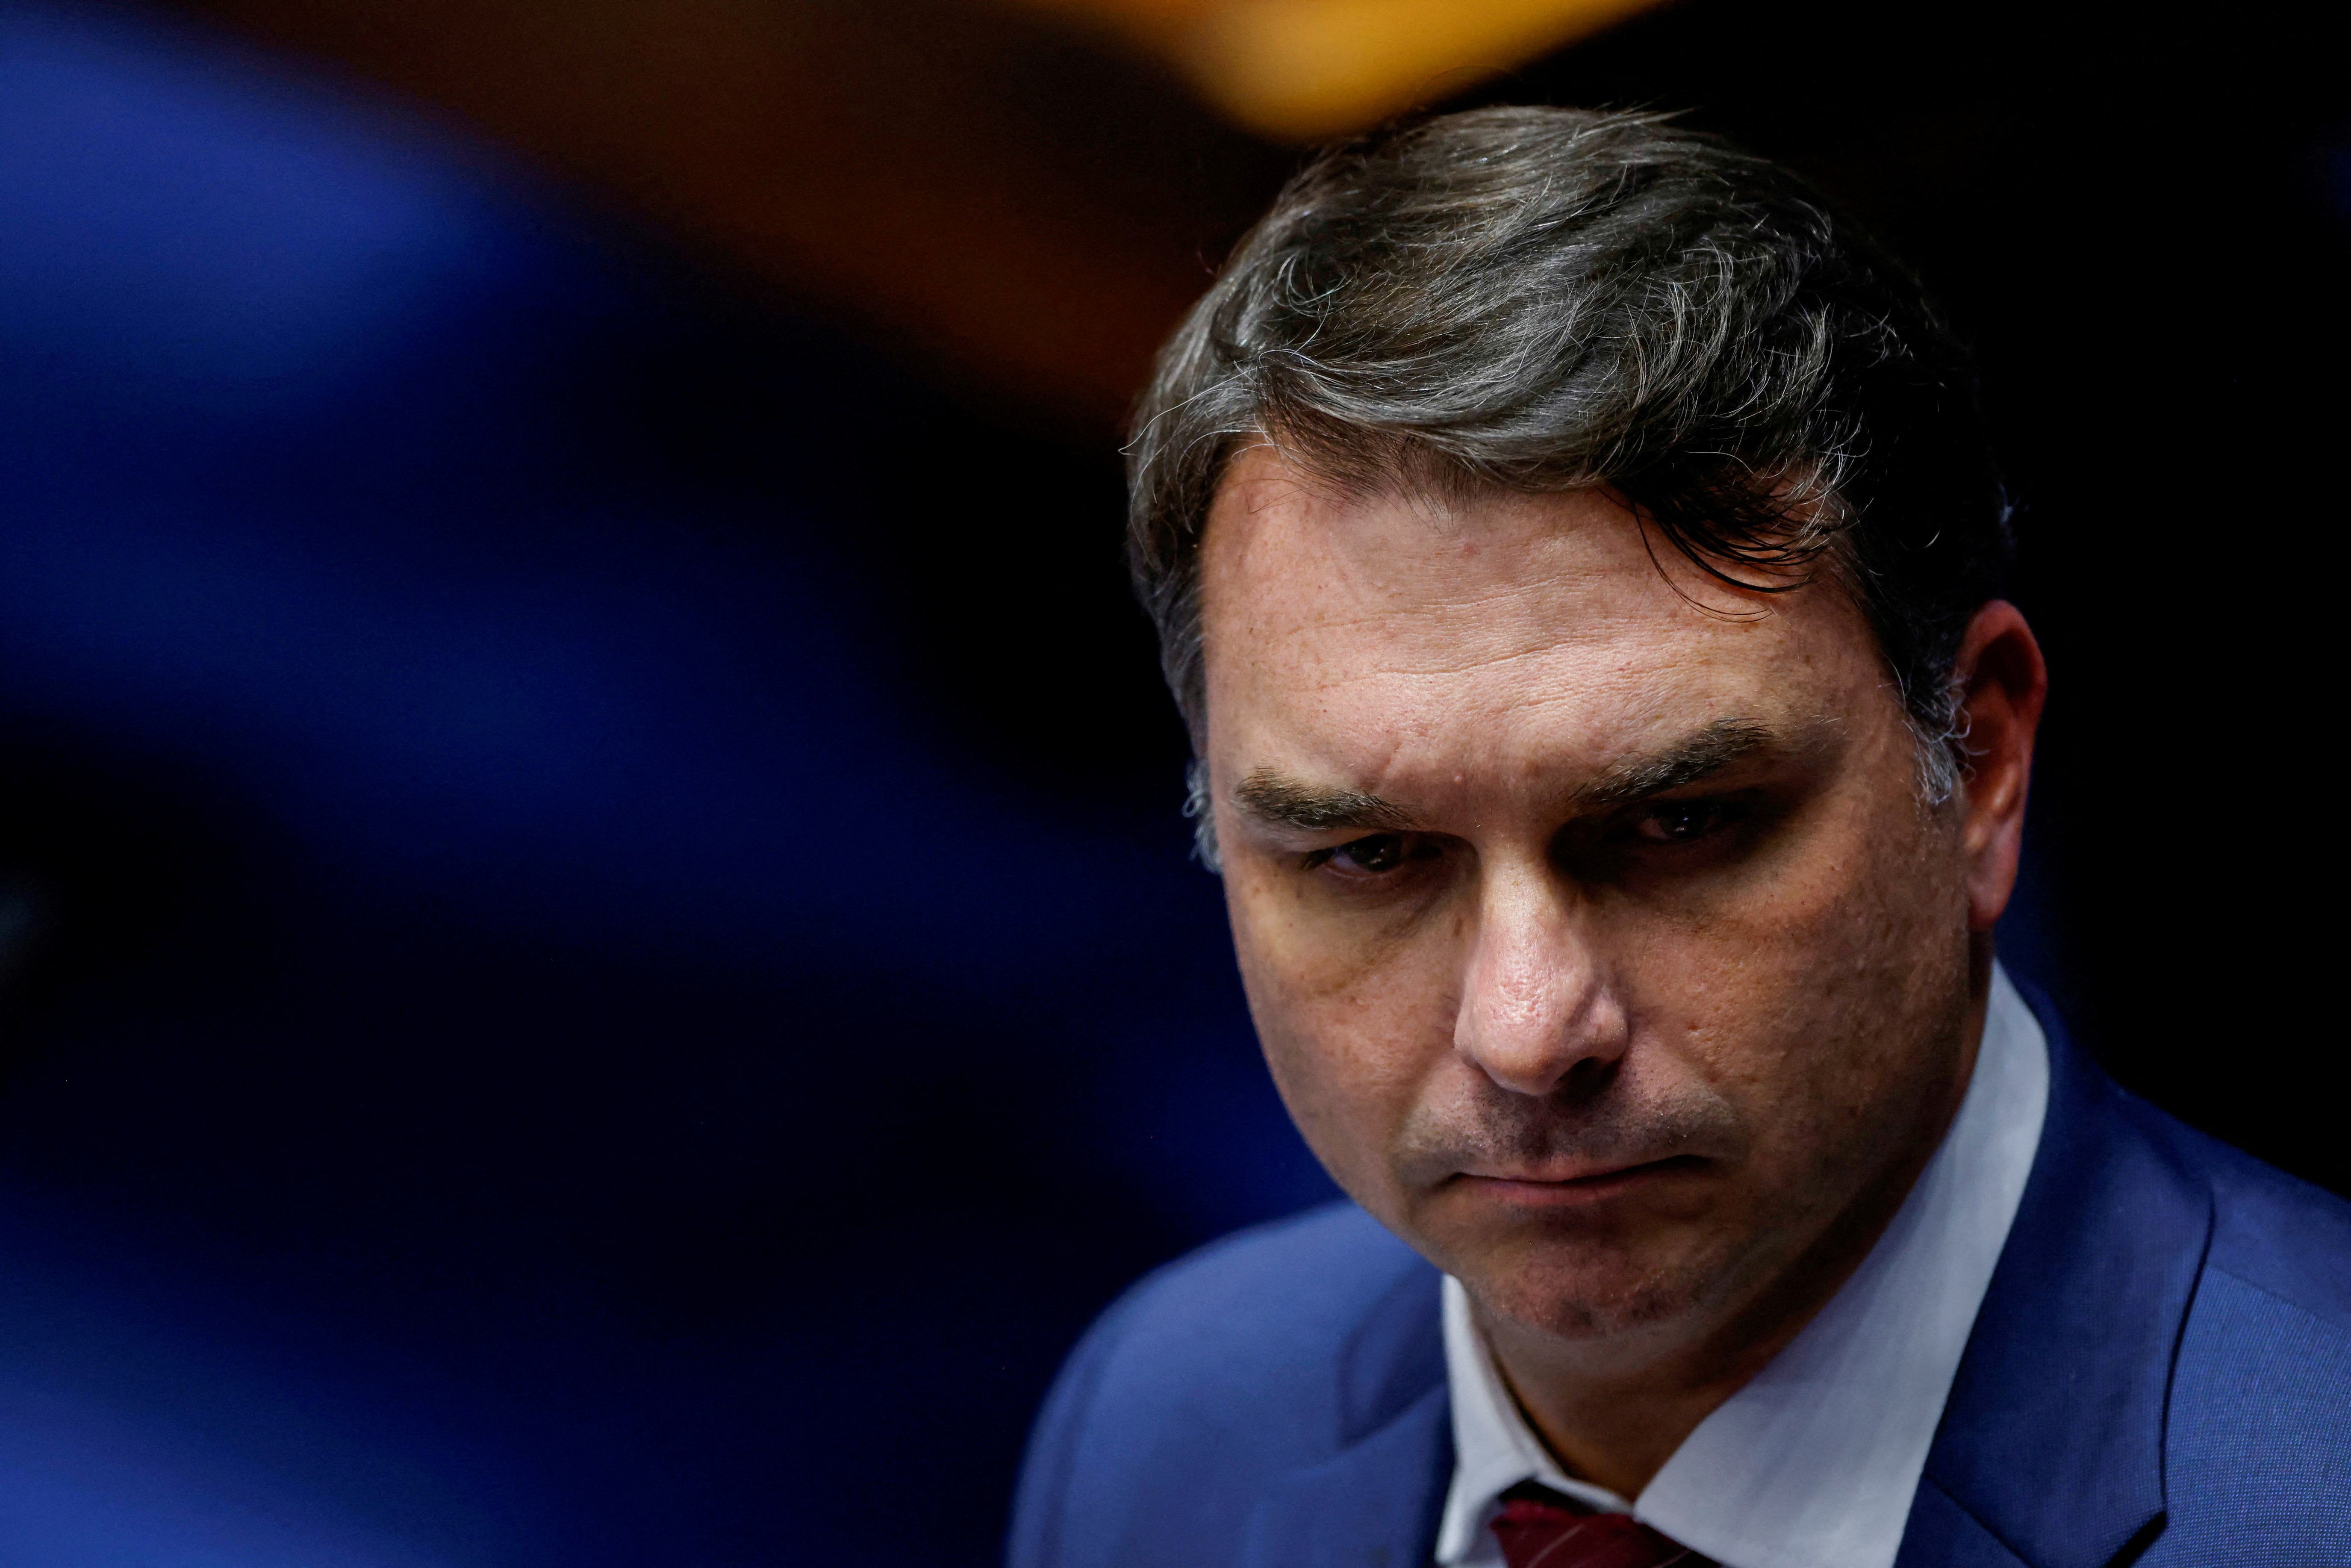 El senador Flavio Bolsonaro, hijo del líder ultraderechista y ex presidente. (REUTERS/Adriano Machado)